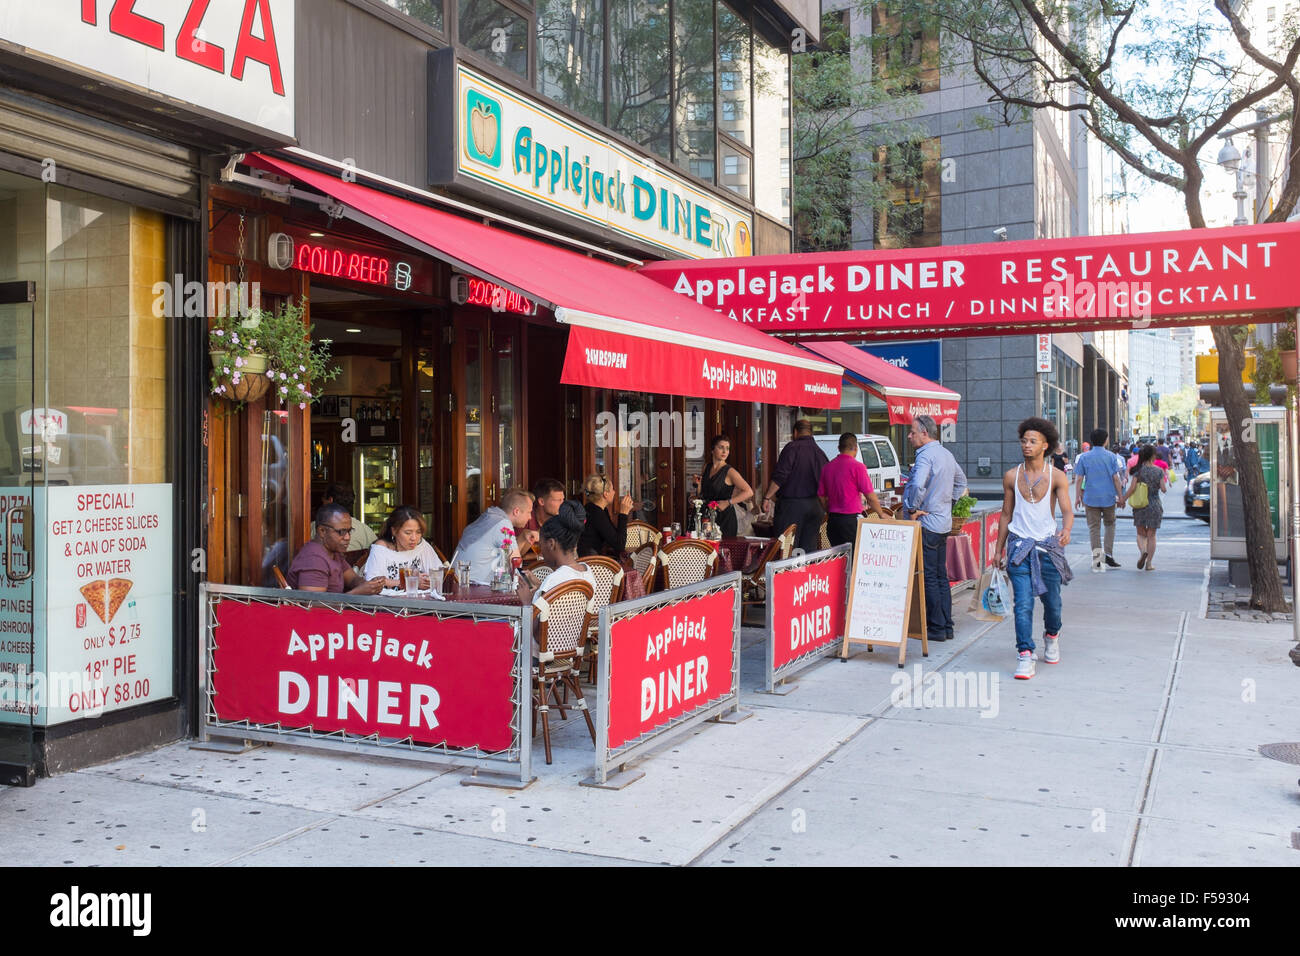 Applejack Diner in Broadway, New York Stock Photo